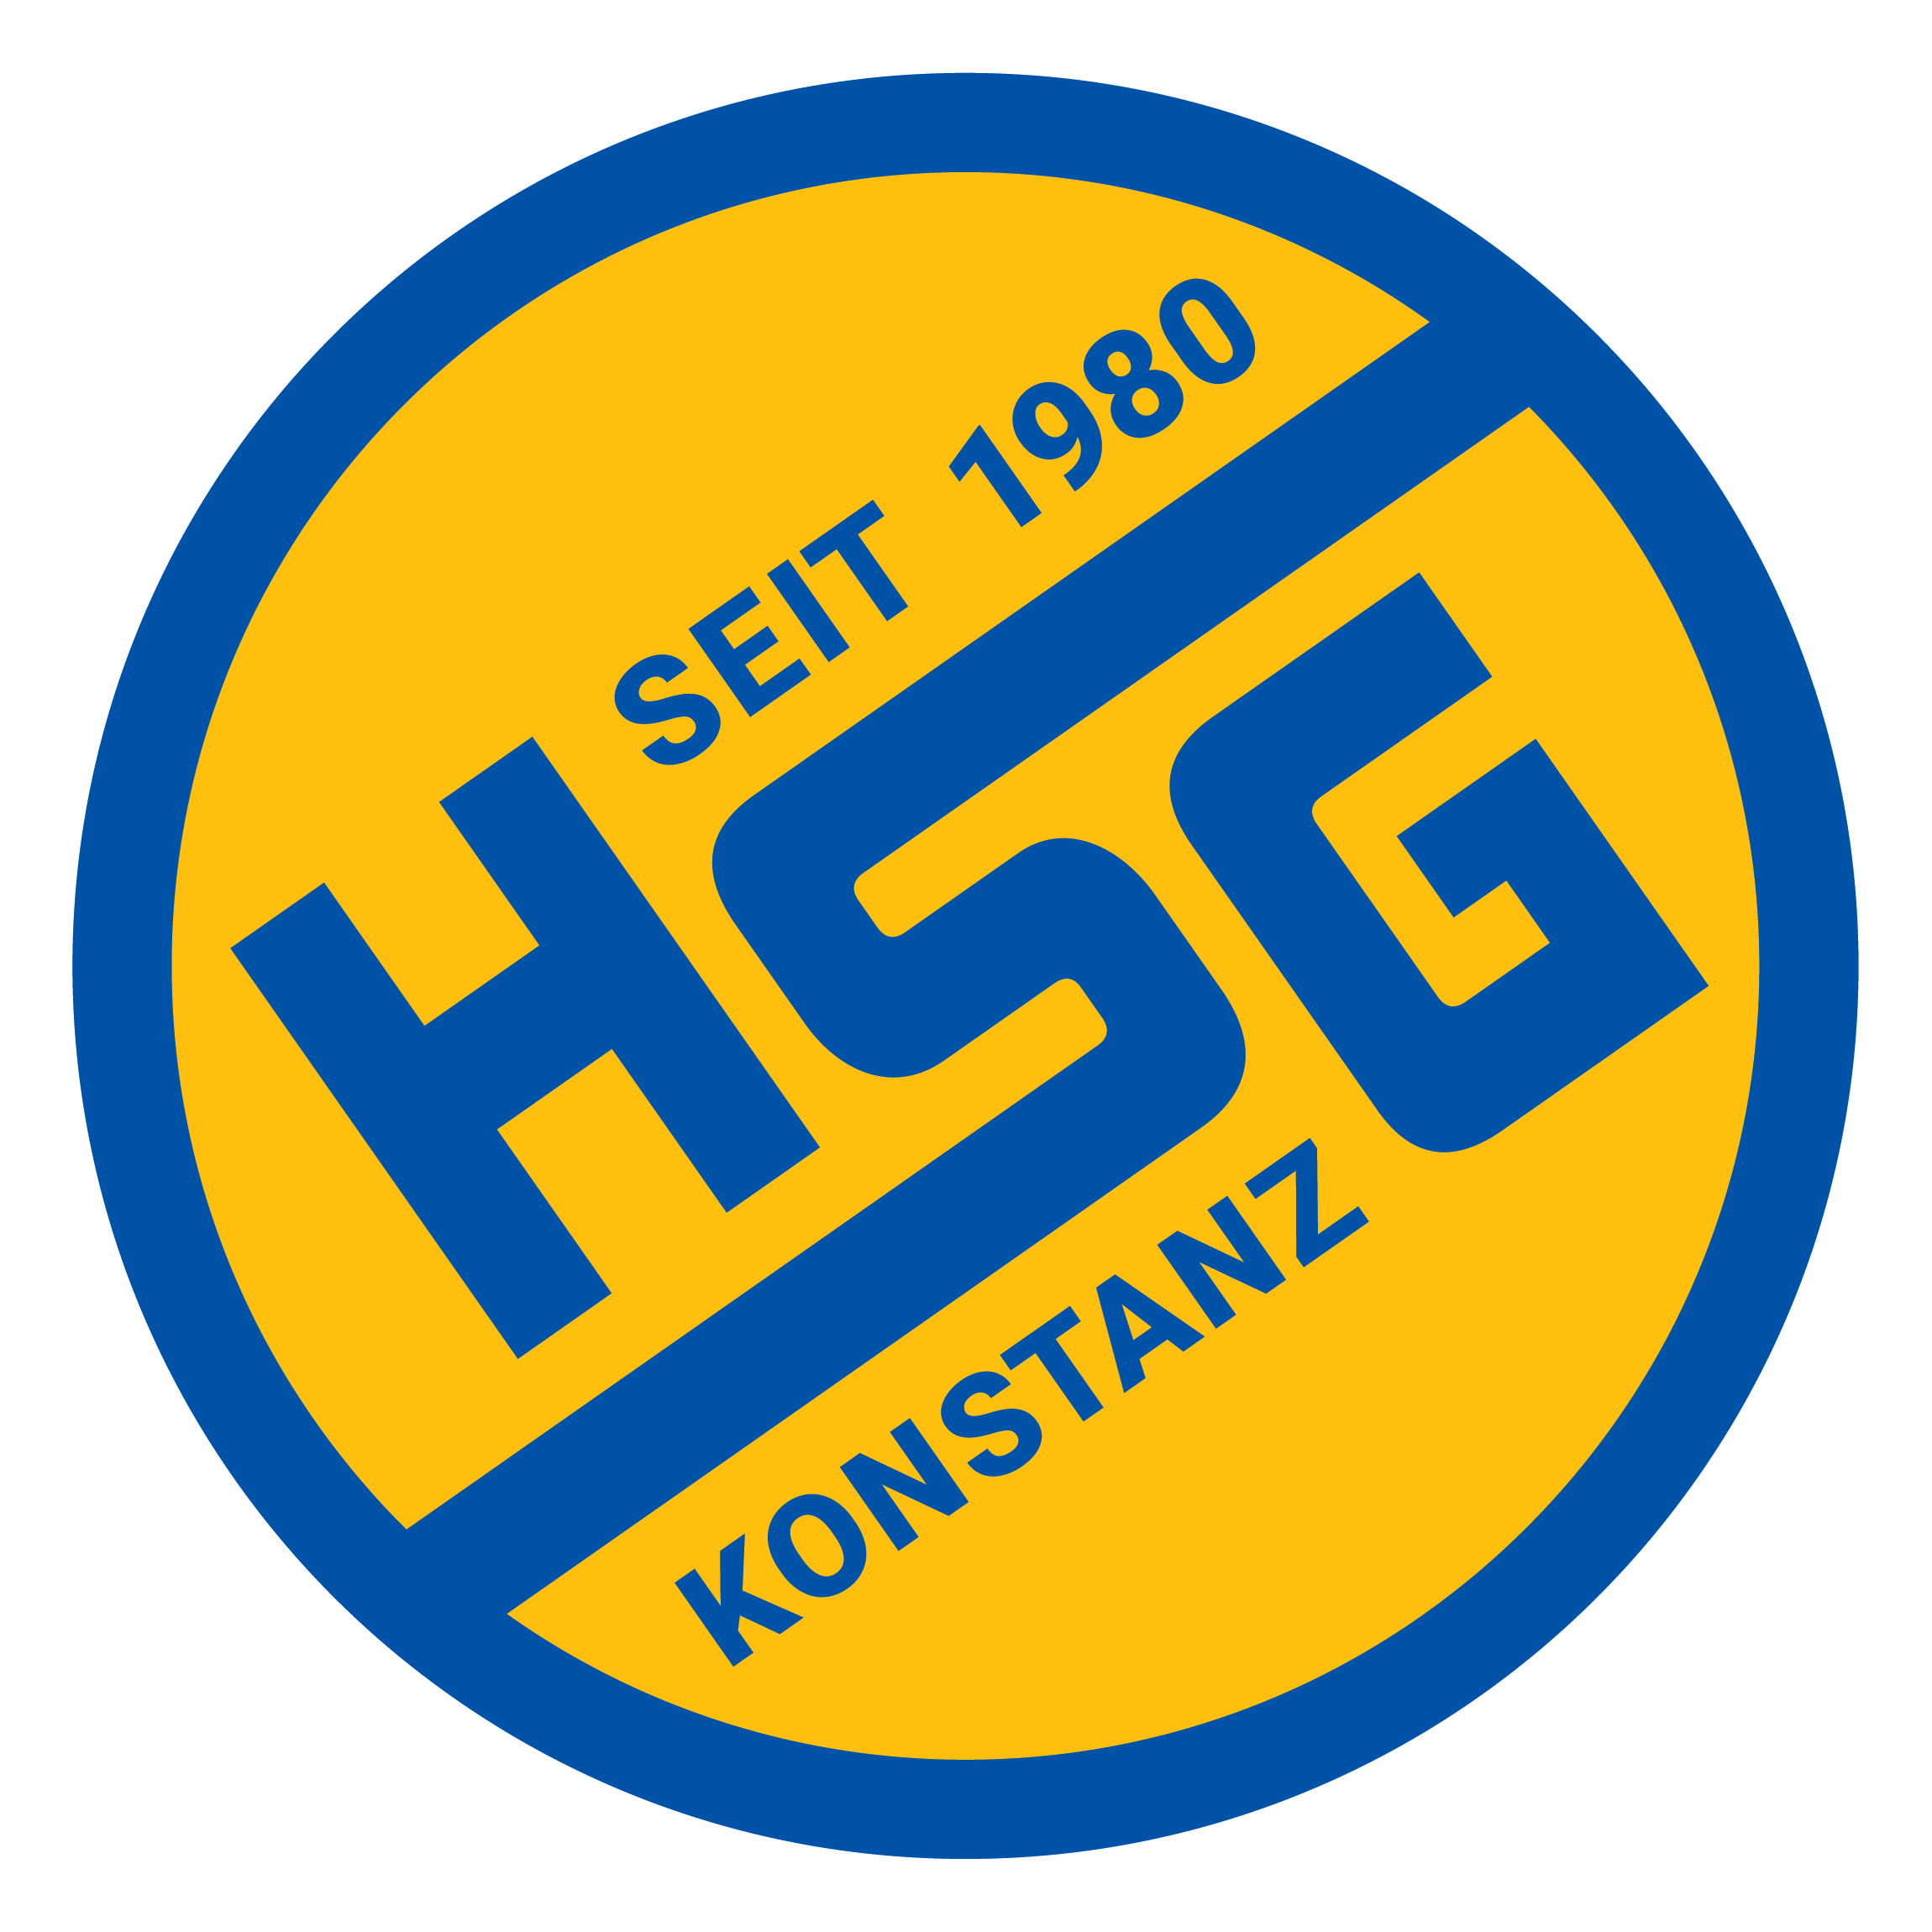 Logo HSG Konstanz